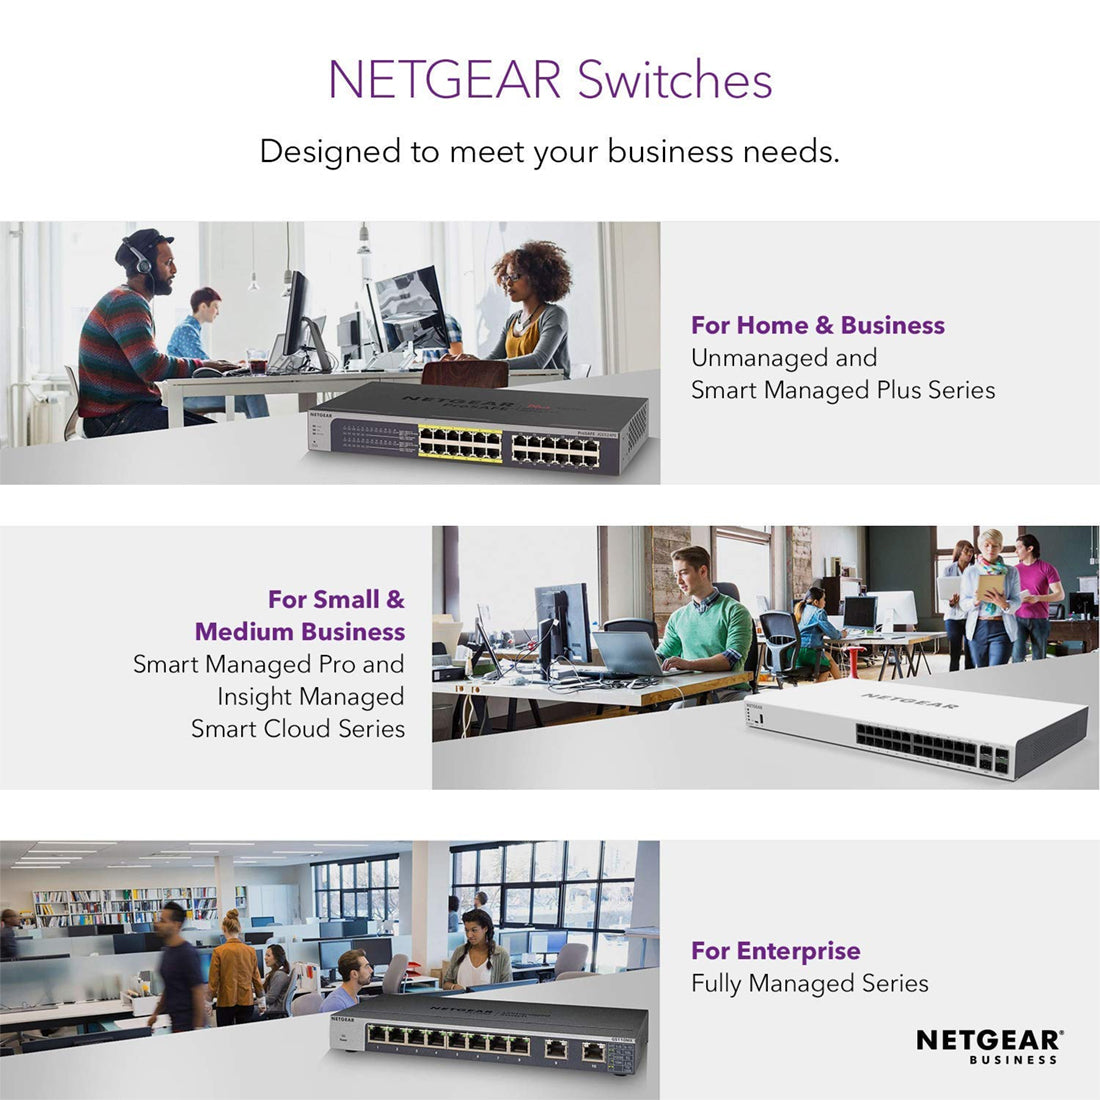 NETGEAR GS310TP 8-Port Gigabit Ethernet PoE+ Network Hub